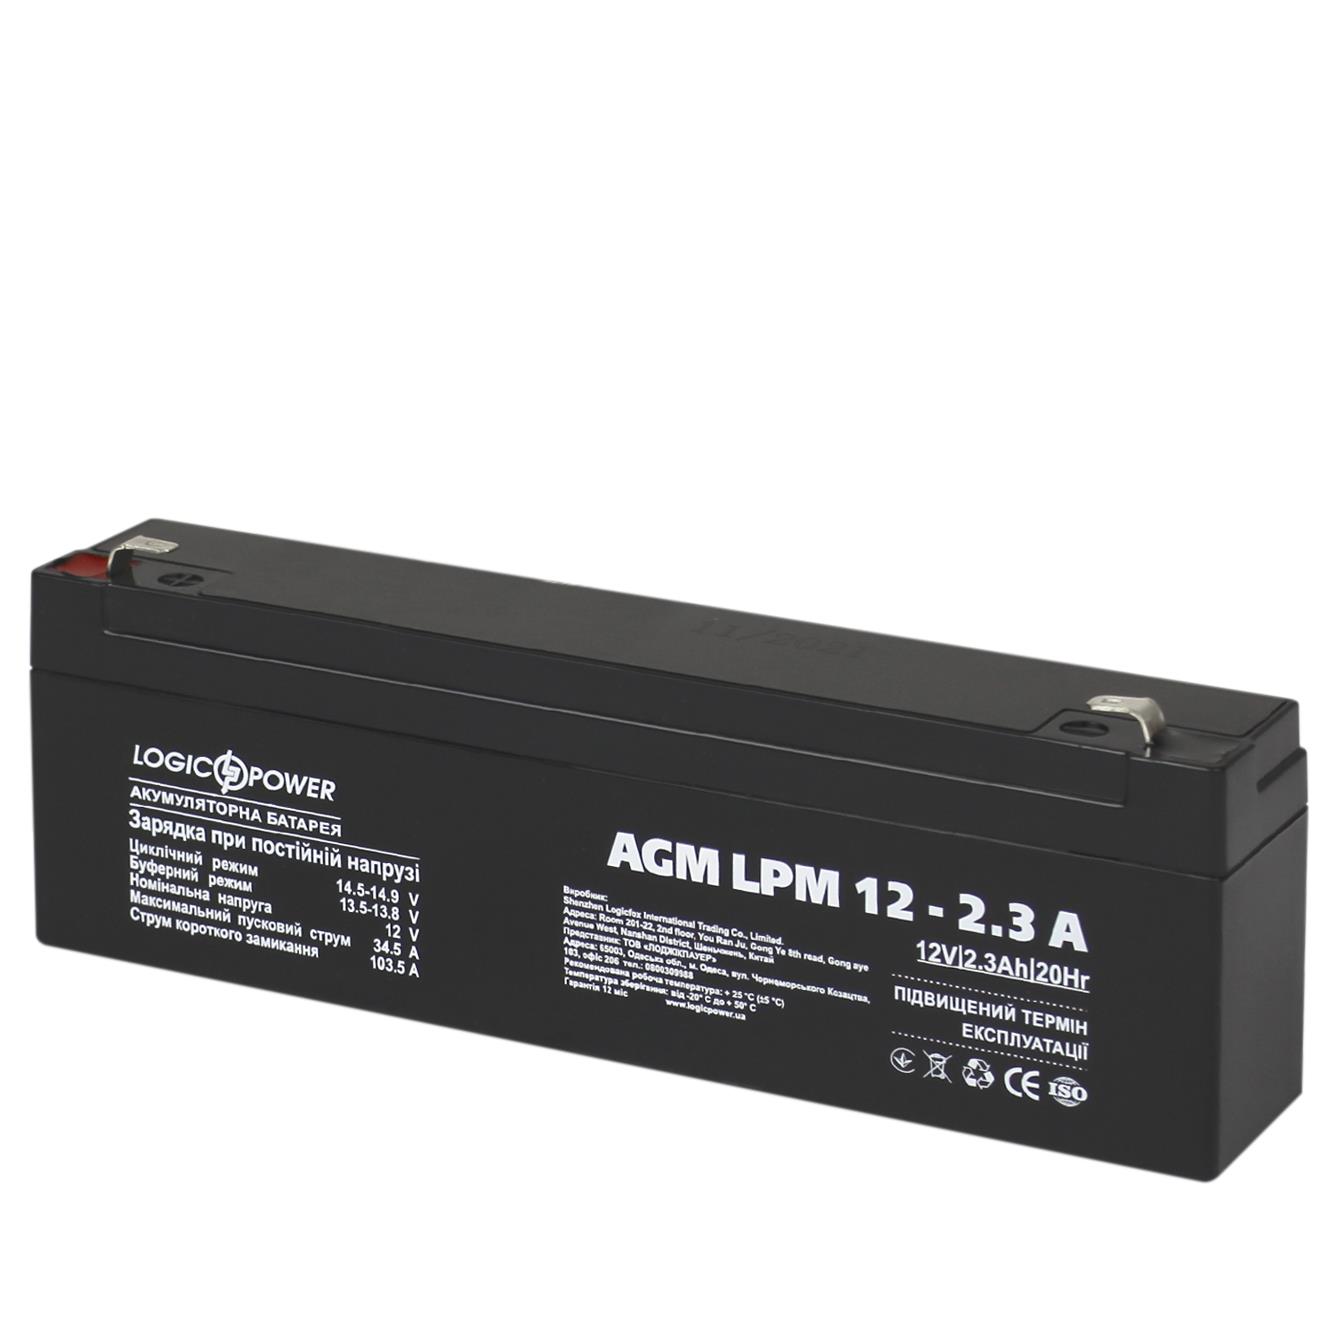 Купить аккумулятор свинцово-кислотный LogicPower AGM LPM 12V - 2.3 Ah (4132) в Николаеве